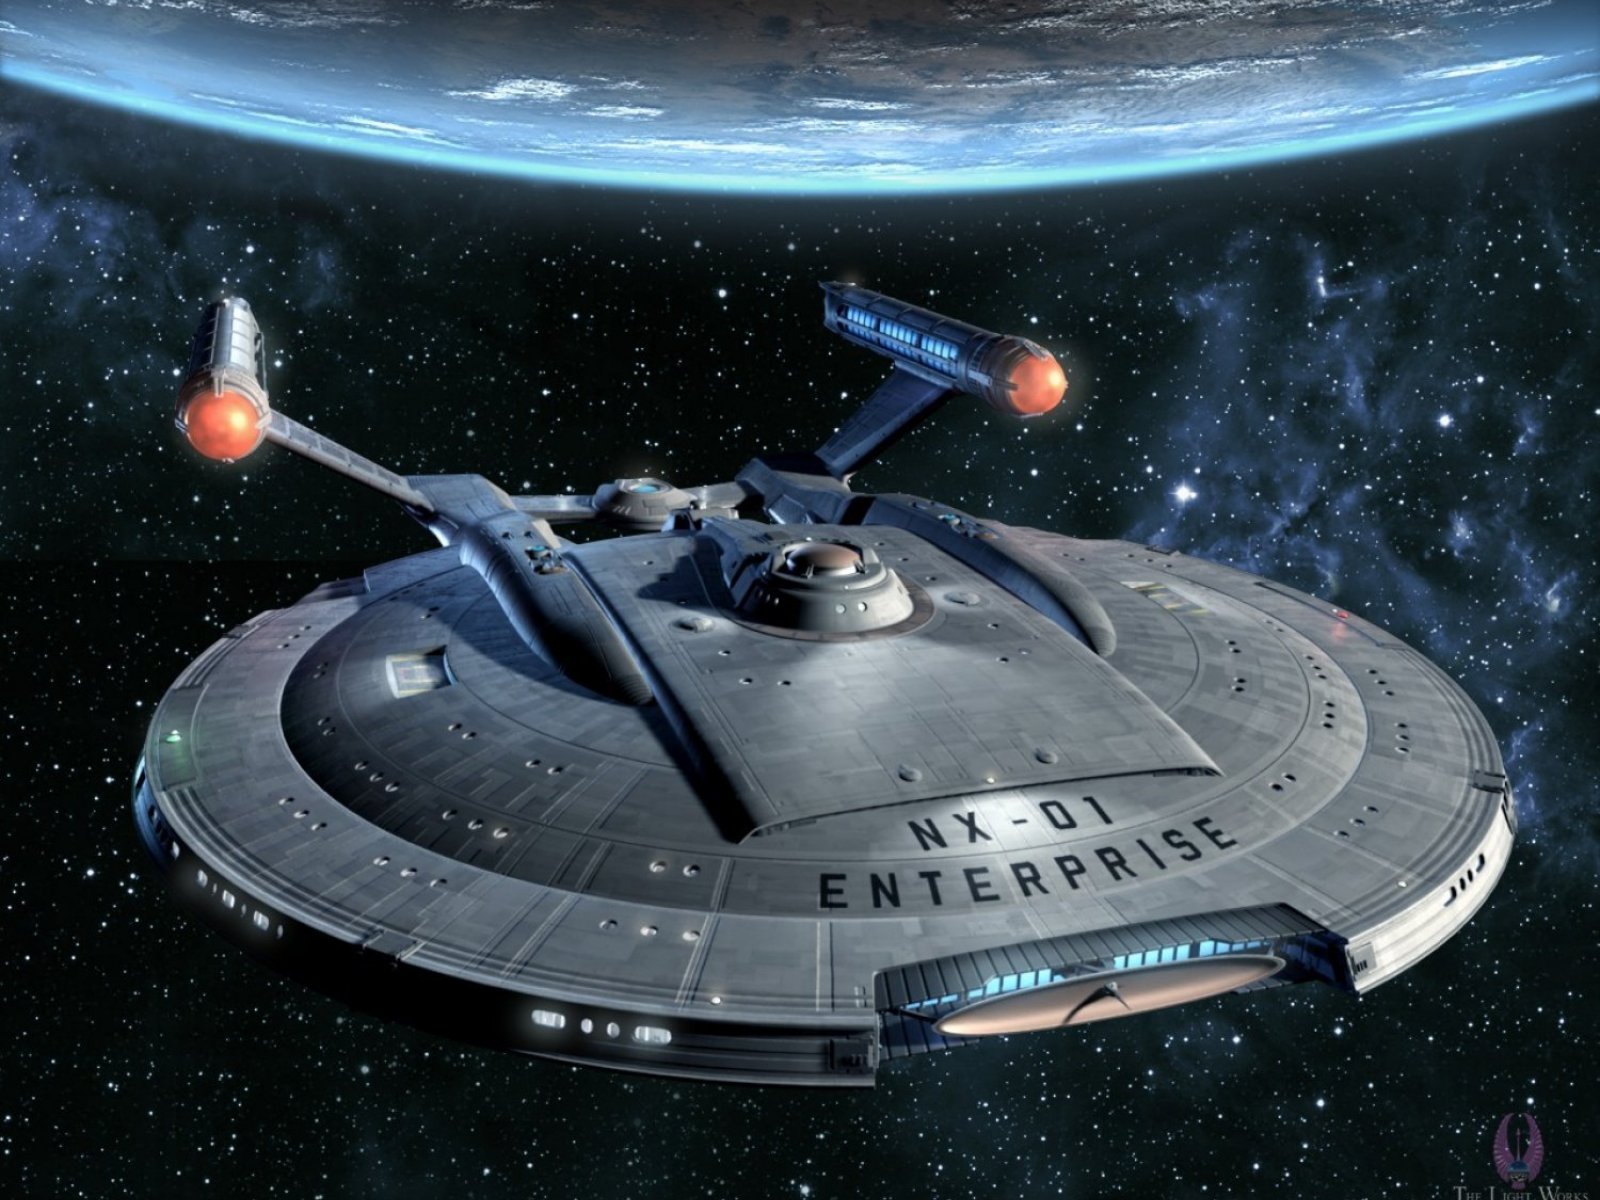 Star trek - Enterprise